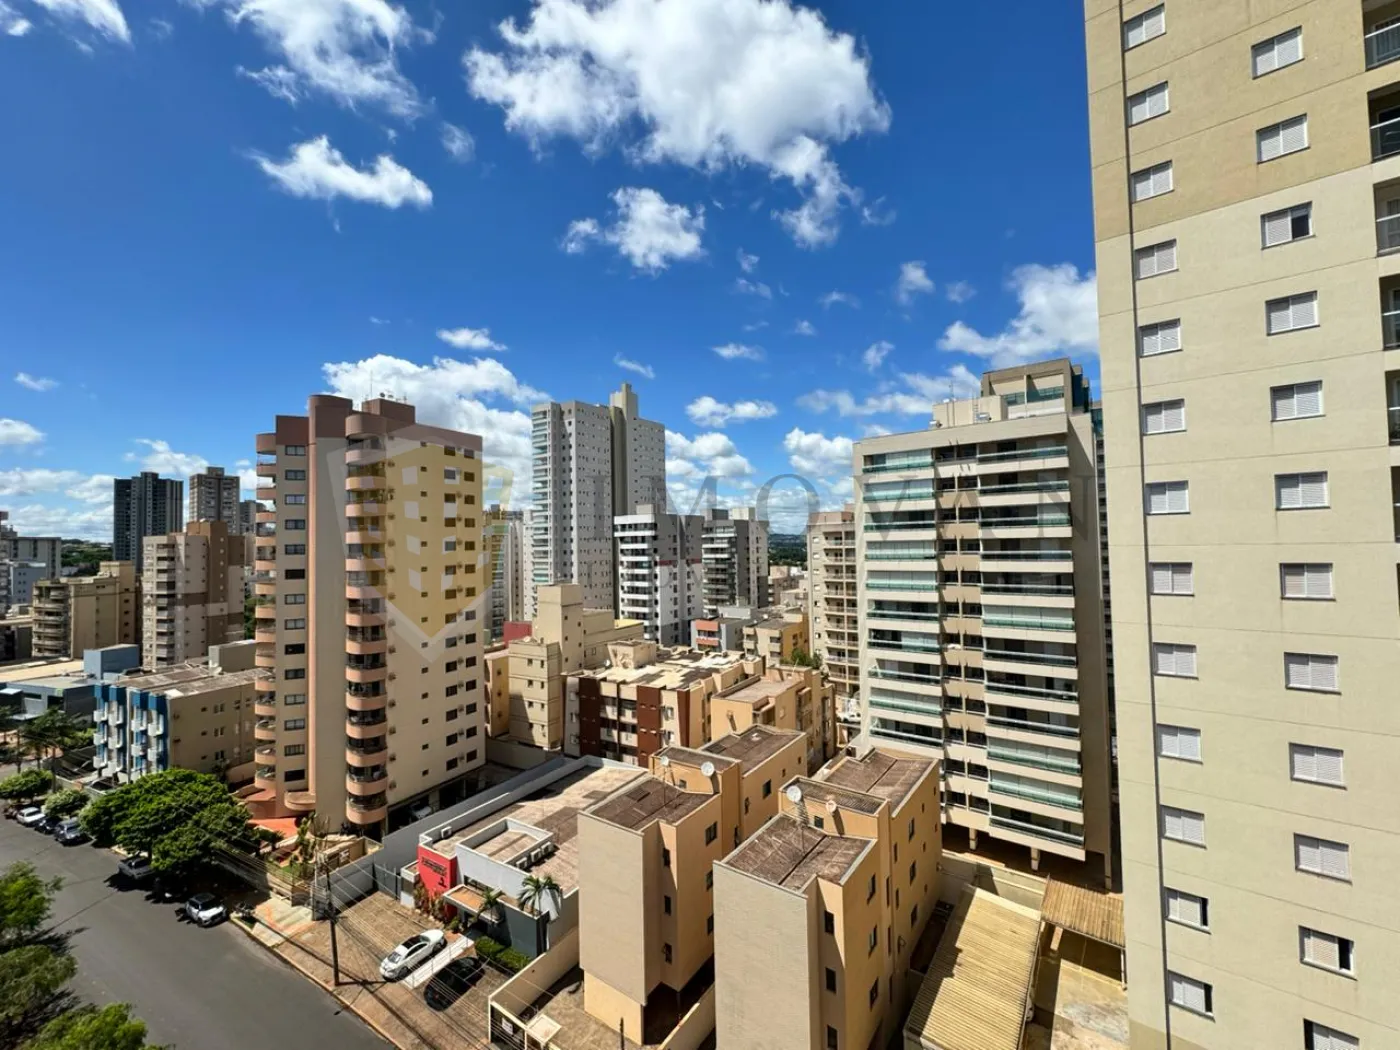 Comprar Apartamento / Padrão em Ribeirão Preto R$ 285.000,00 - Foto 5